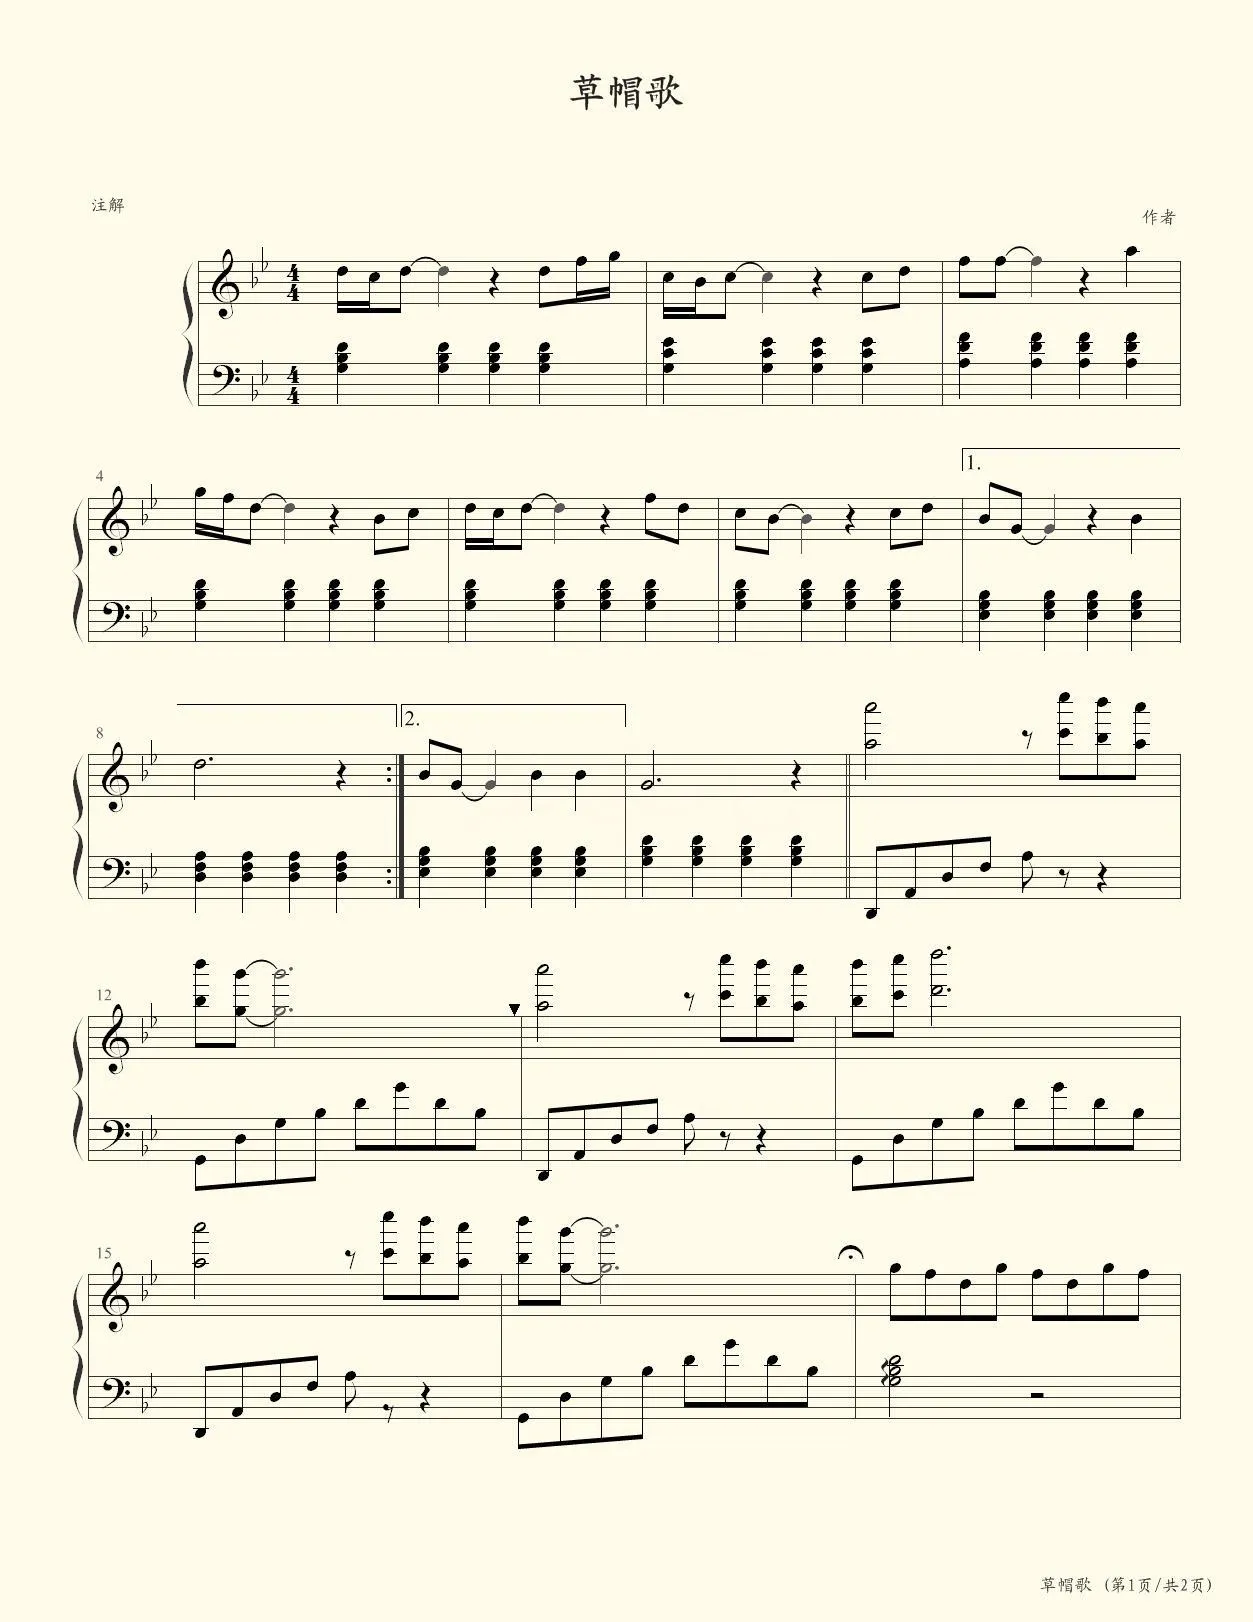 草帽歌双手简谱预览1-钢琴谱文件（五线谱、双手简谱、数字谱、Midi、PDF）免费下载